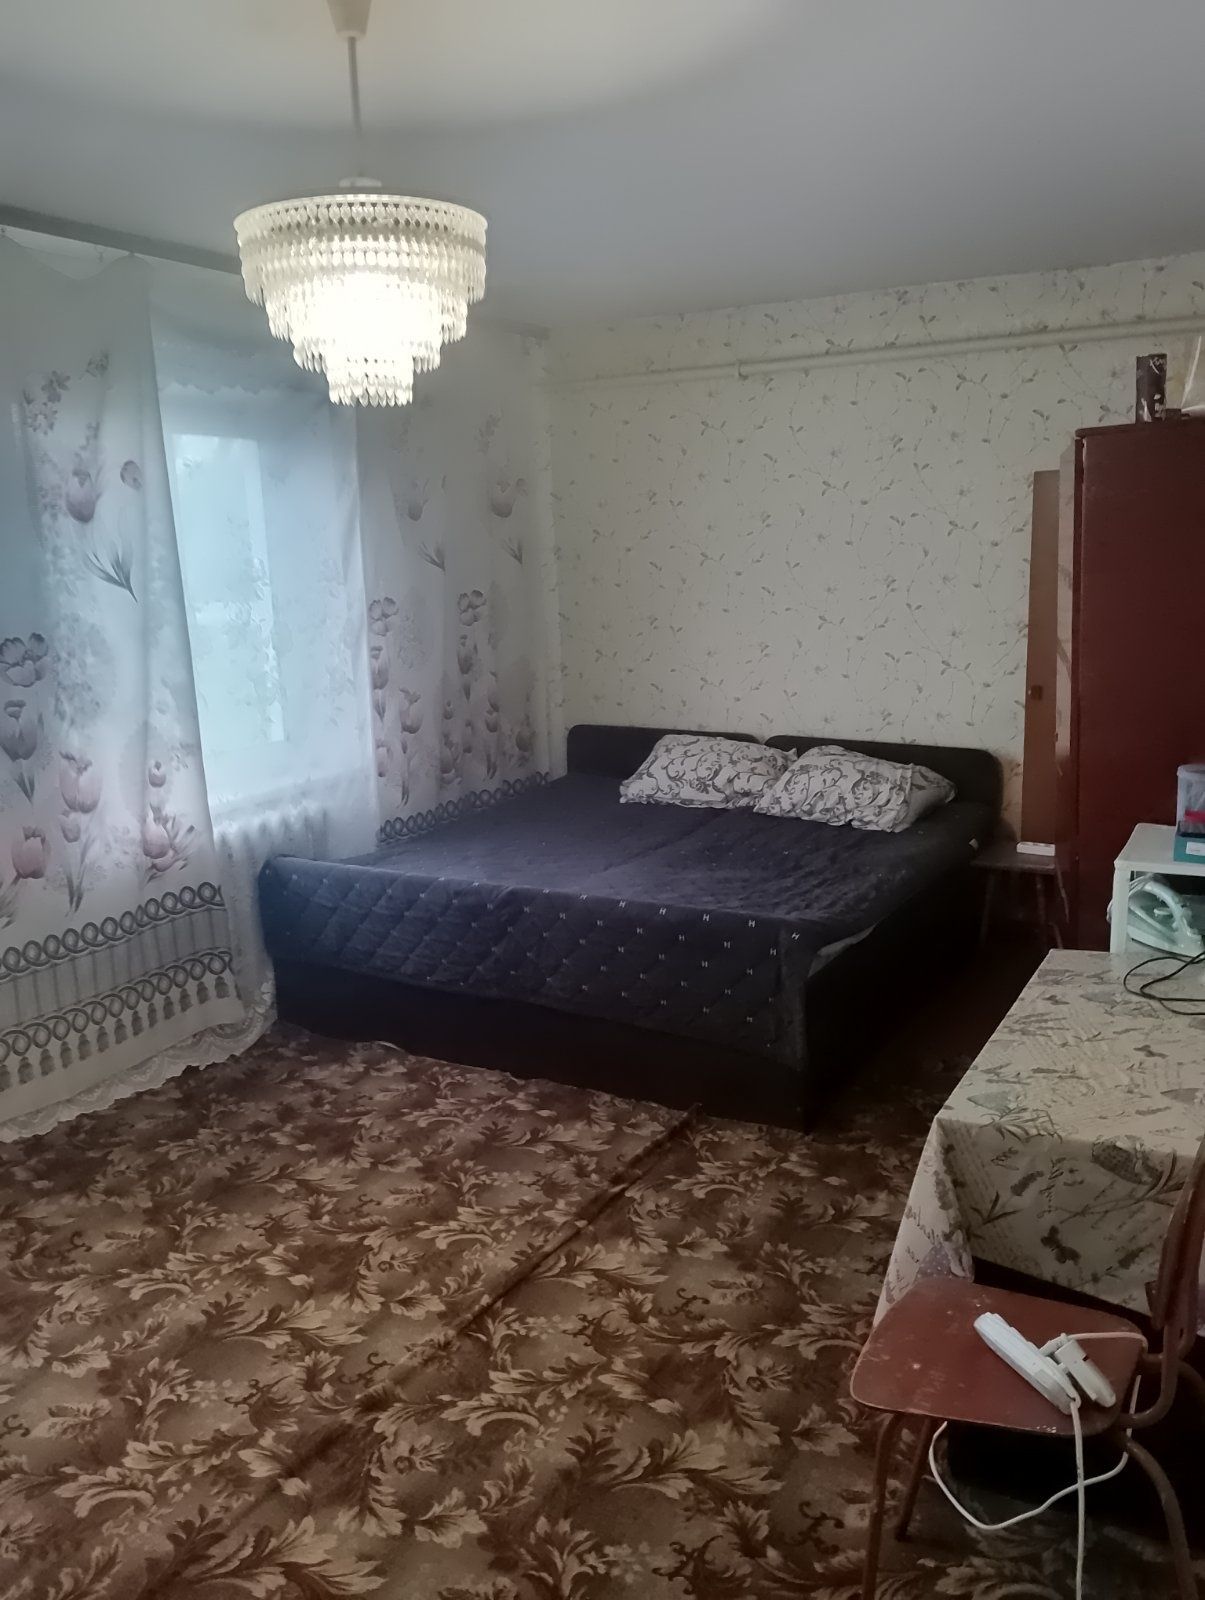 Продається 2х кімнатна квартира в Черняхові 12 000$